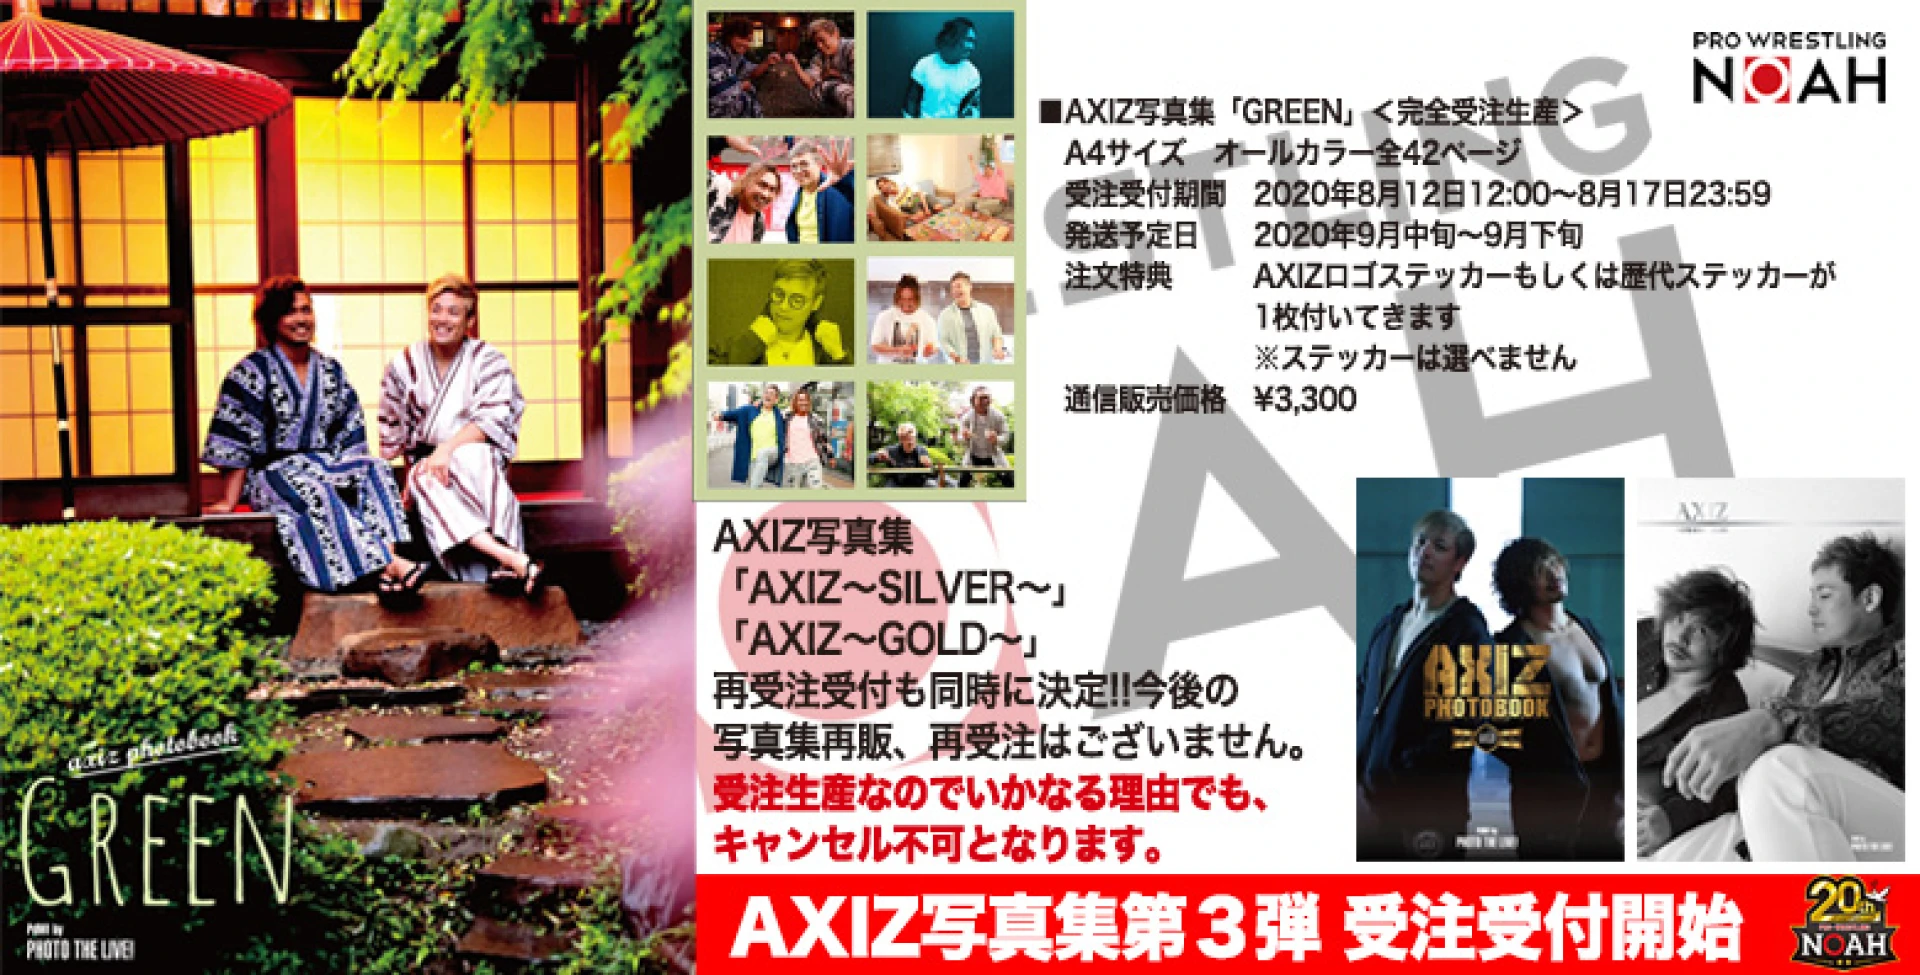 8月12日12時受付開始】AXIZ写真集「GREEN」完全受注生産にて販売決定 